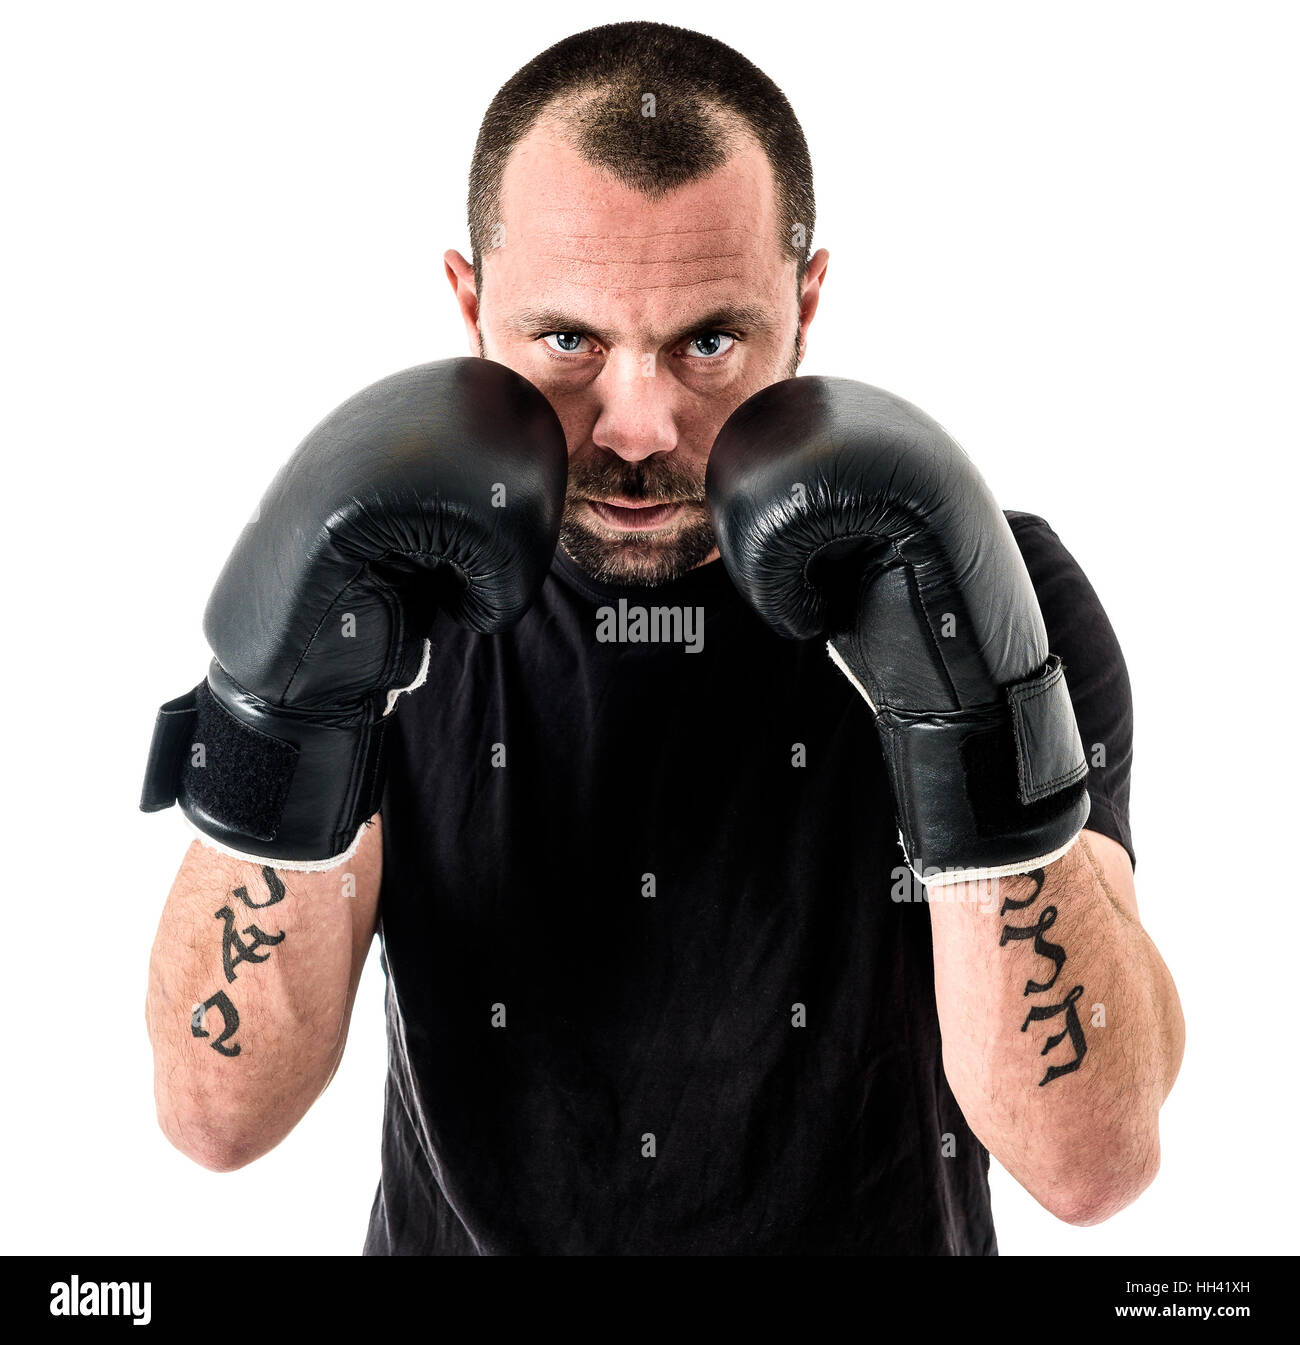 Ritratto di atleta maschio boxer uomo cercando aggressivo con i guantoni,  camicia nera e tatuaggi. Isolato su sfondo bianco Foto stock - Alamy